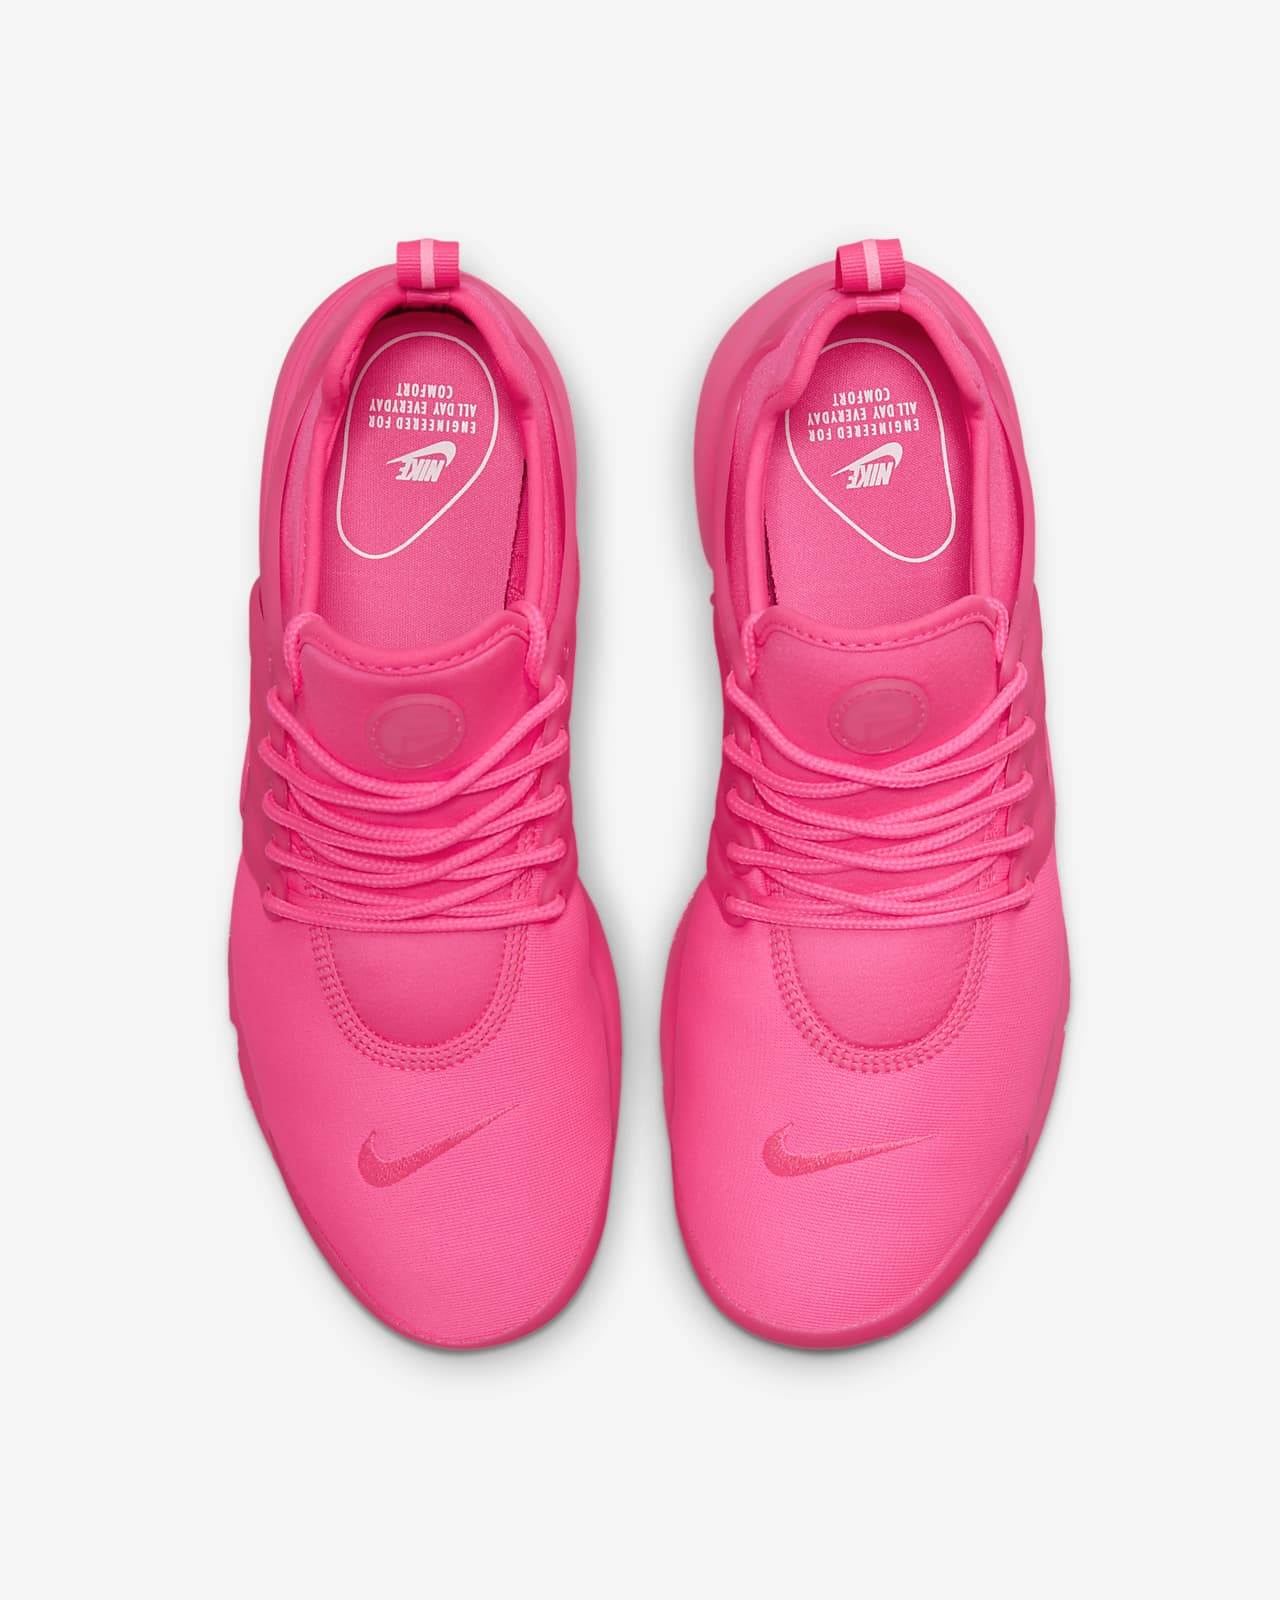 Nominal Restringido entrega Calzado para mujer Nike Air Presto. Nike.com